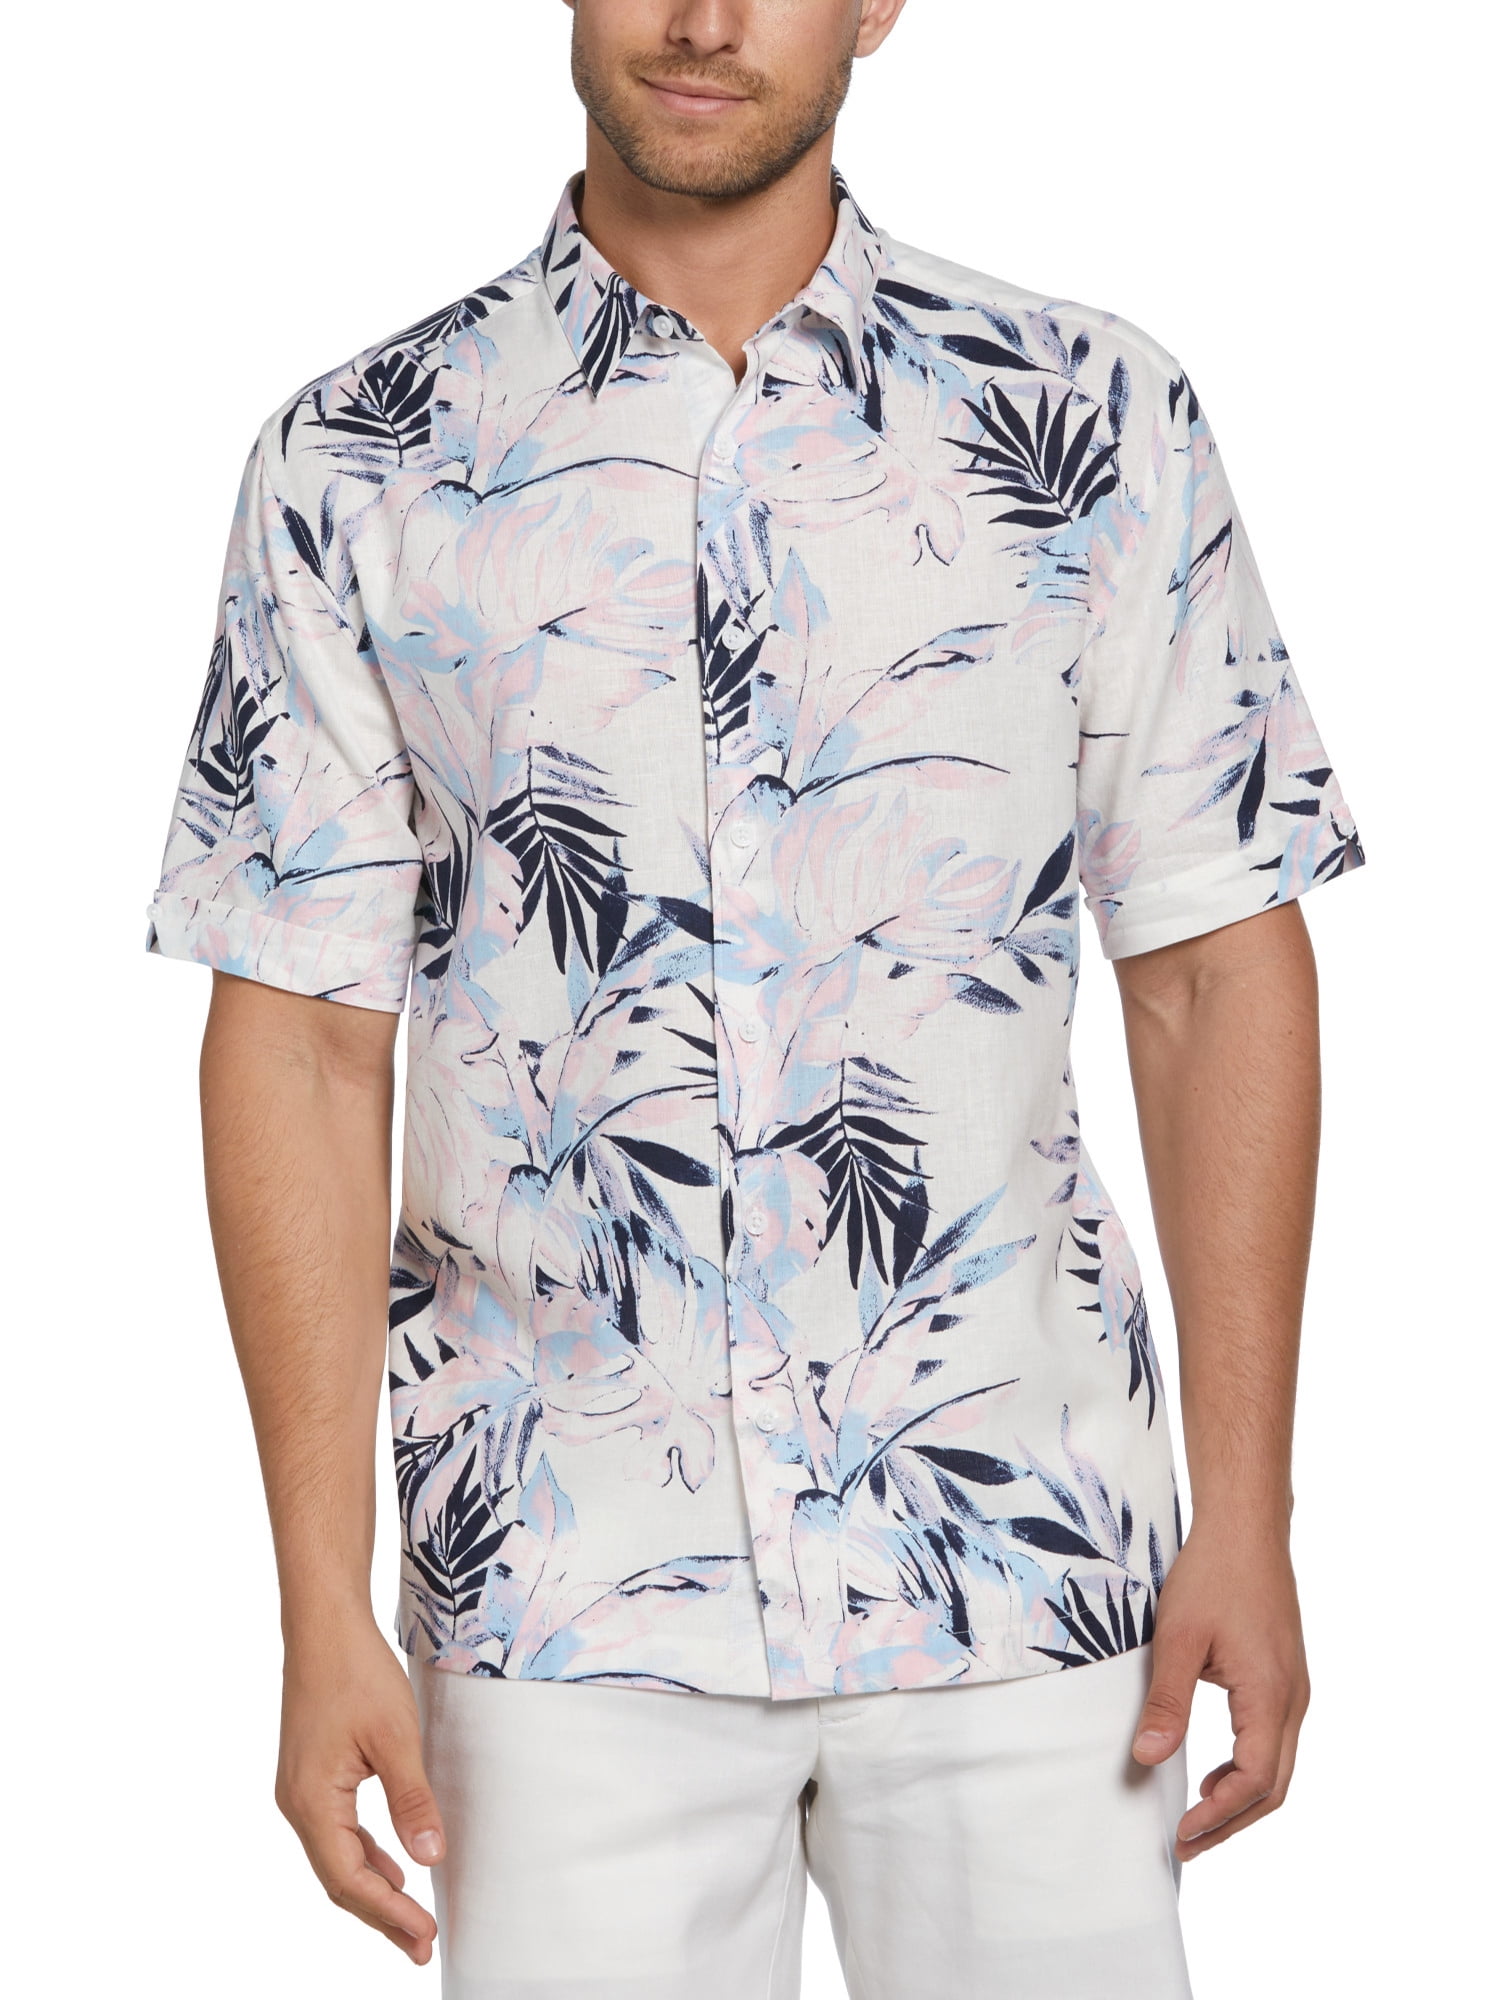 Cafe Luna Men's Tropical Print Shirt - Walmart.com